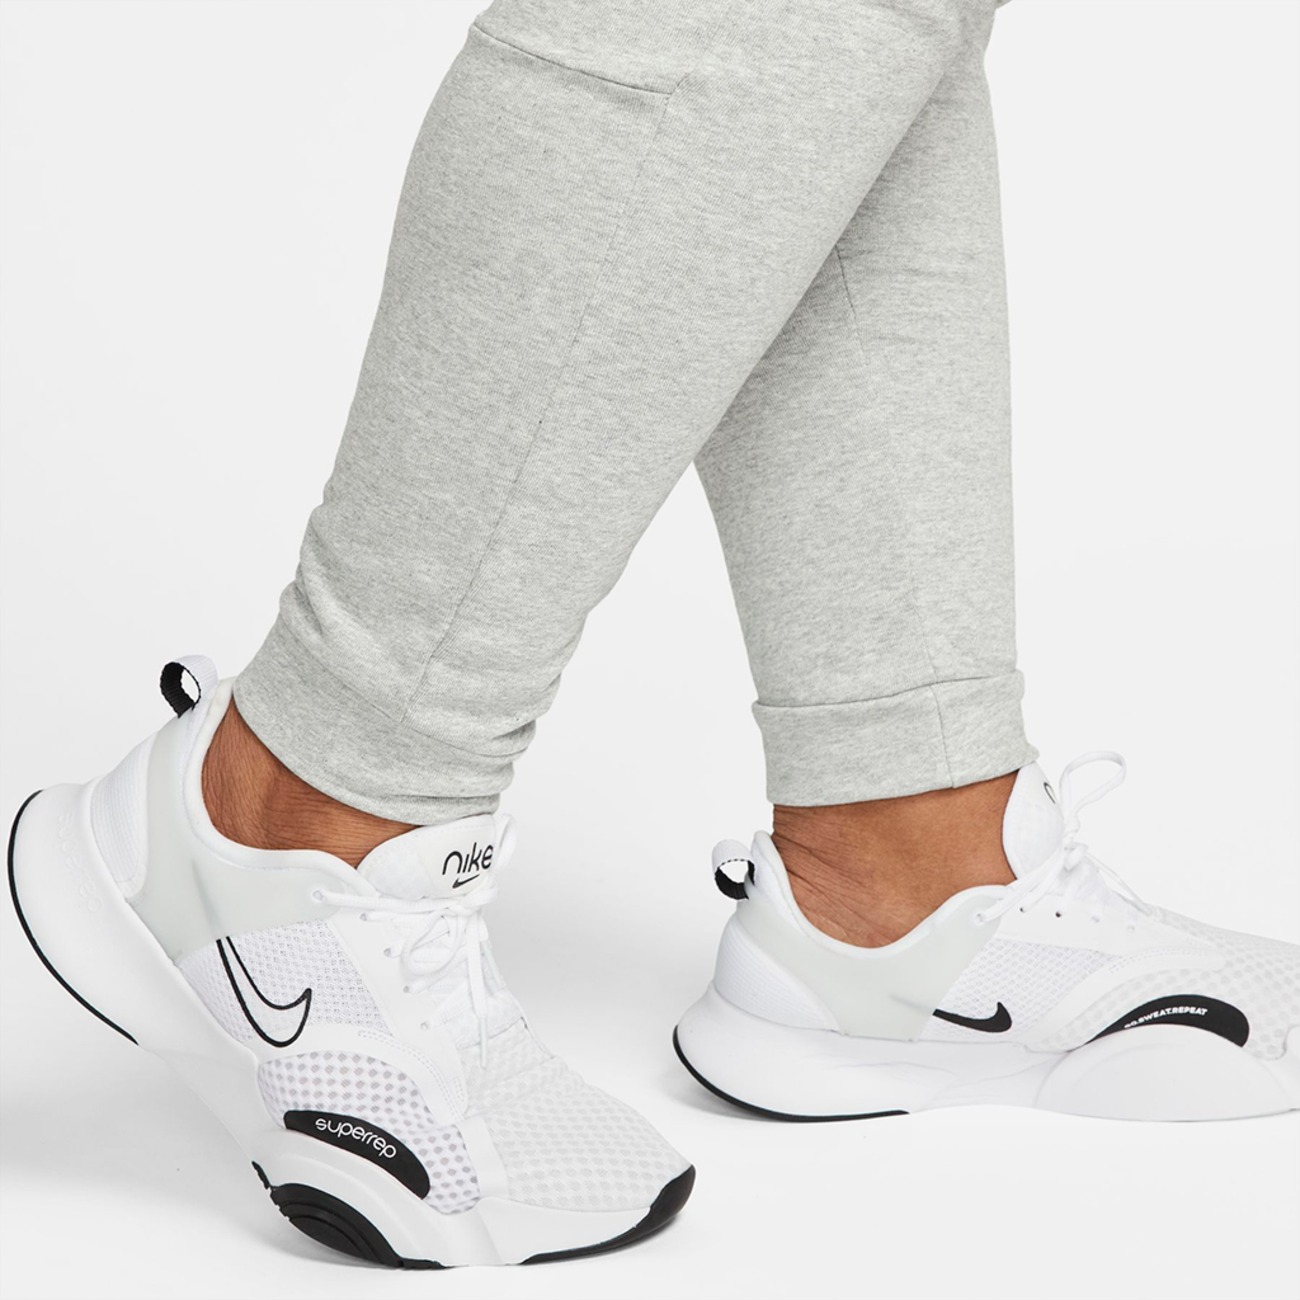 Calça Nike Dri-FIT Masculina - Foto 14